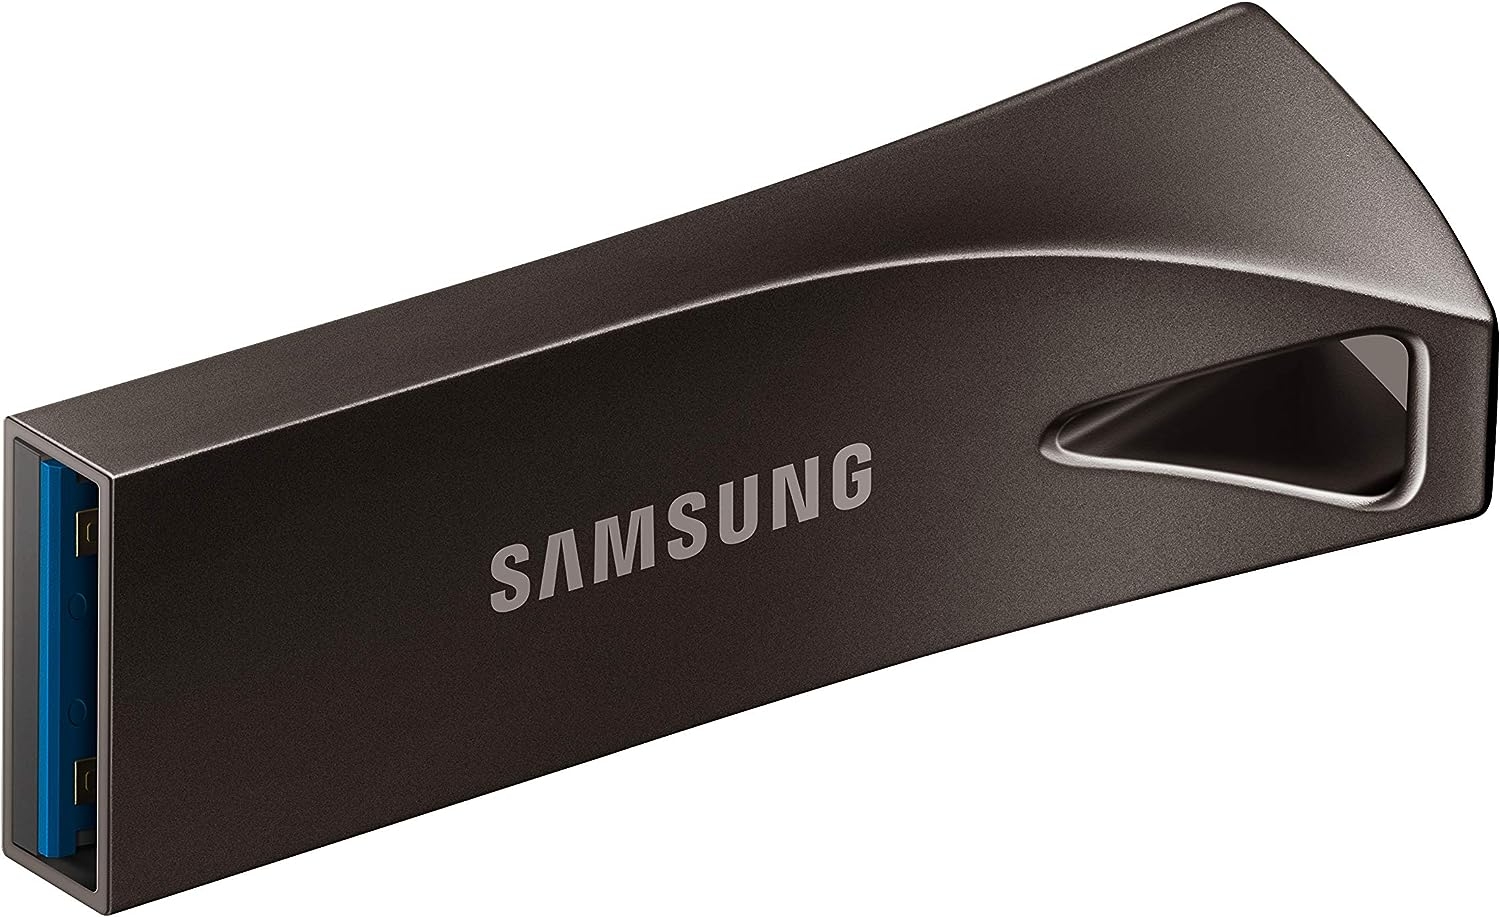 USB 64GB Samsung FIT Plus (USB 3.1, Black)